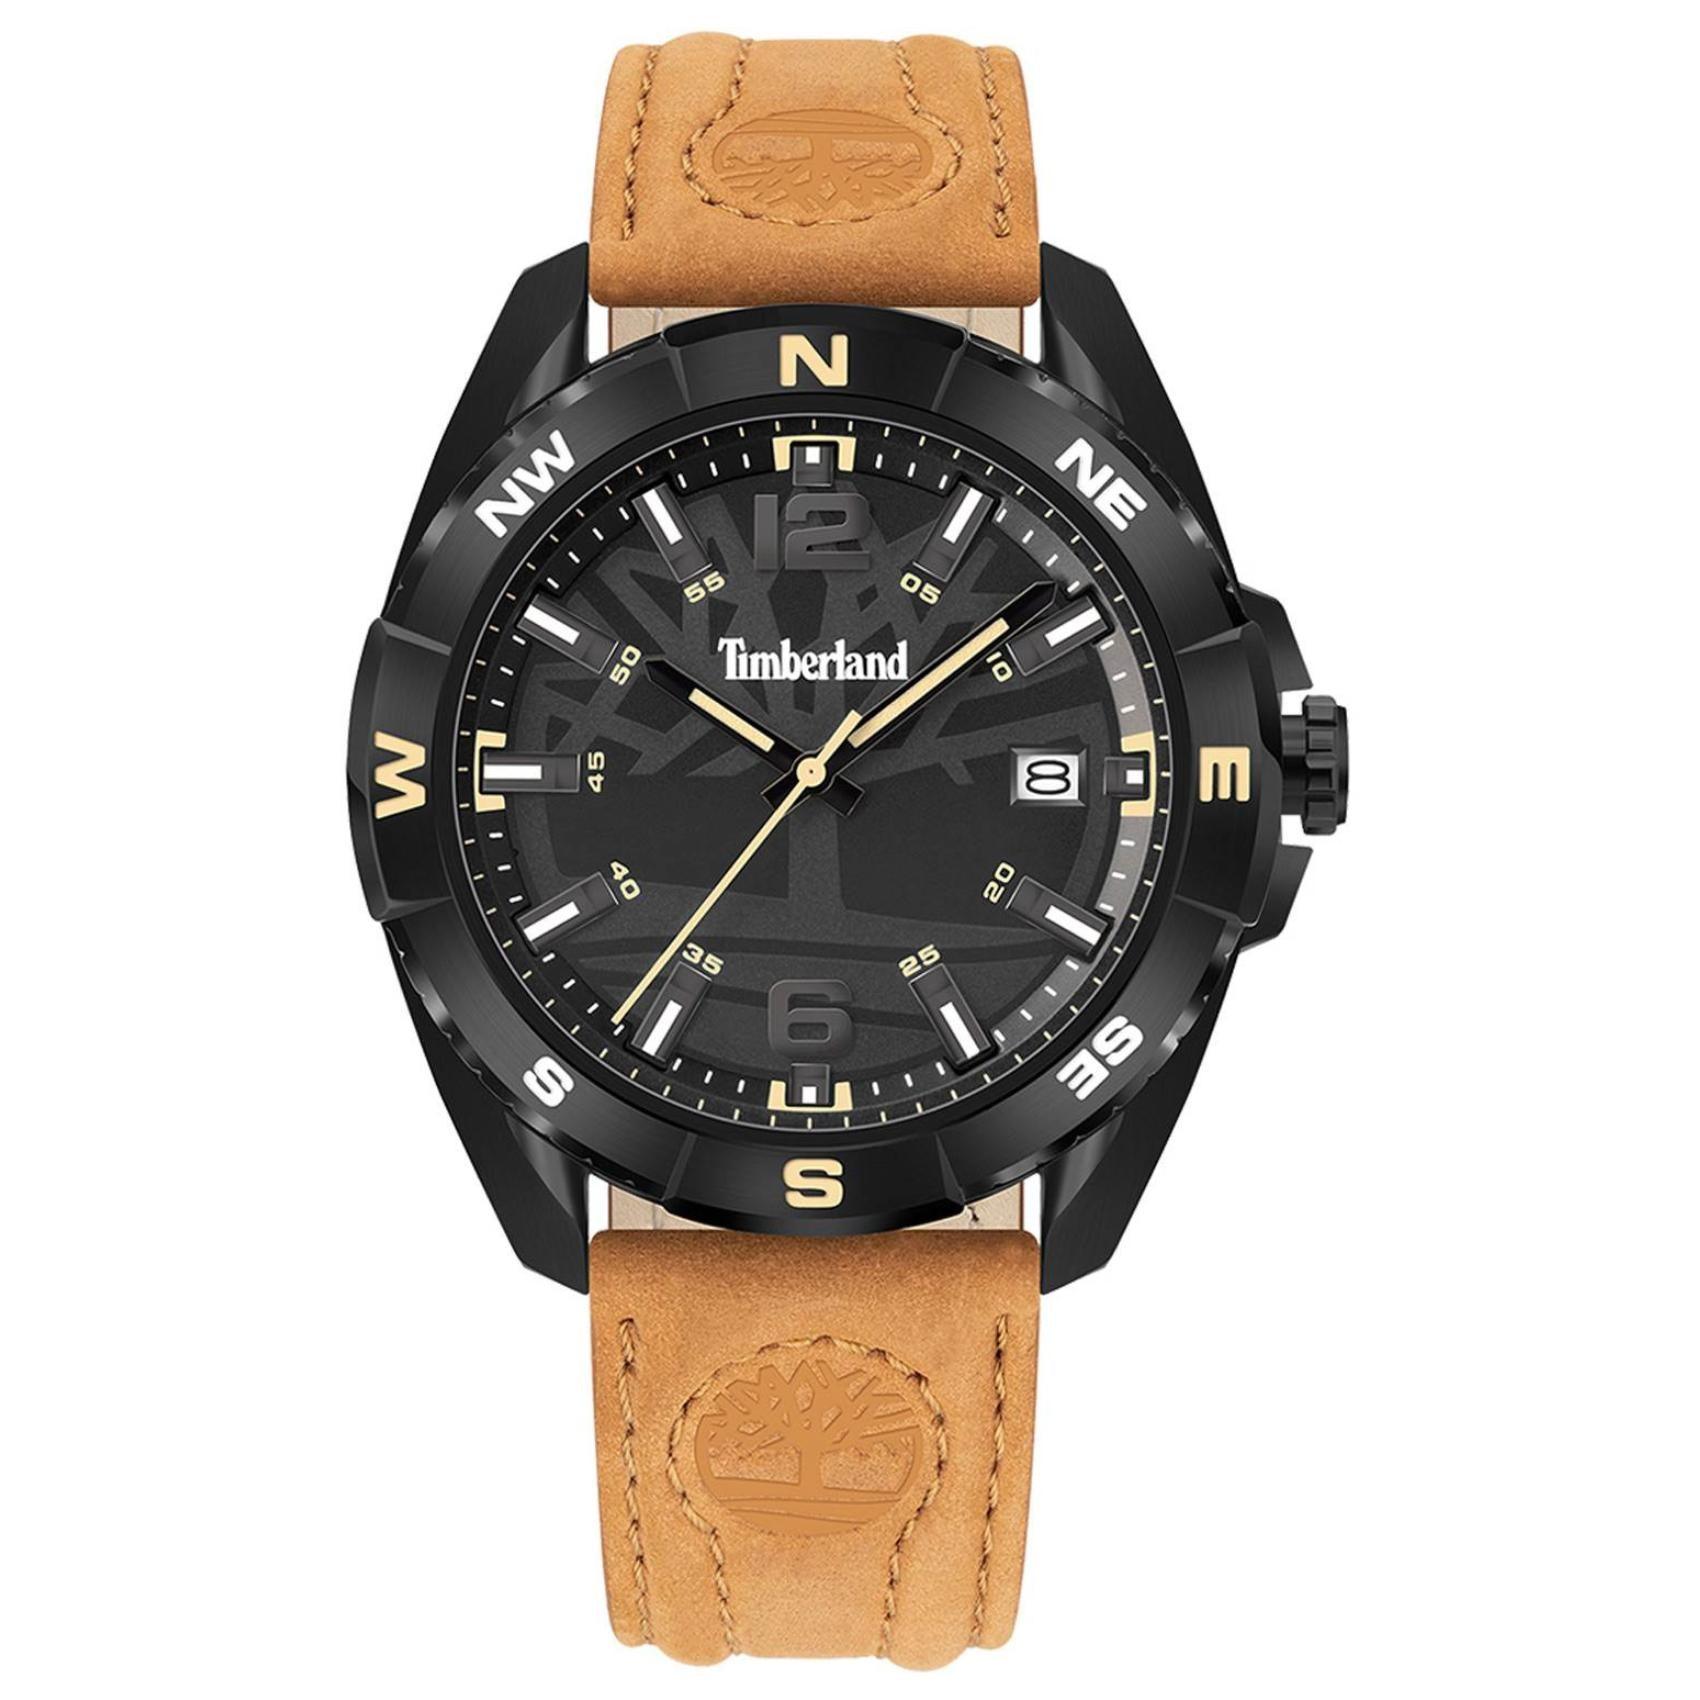 Αντρικό ρολόι Timberland Milinocket TDWGB2202101 με καφέ δερμάτινο λουράκι και μαύρο καντράν διαμέτρου 44mm με ημερομηνία.